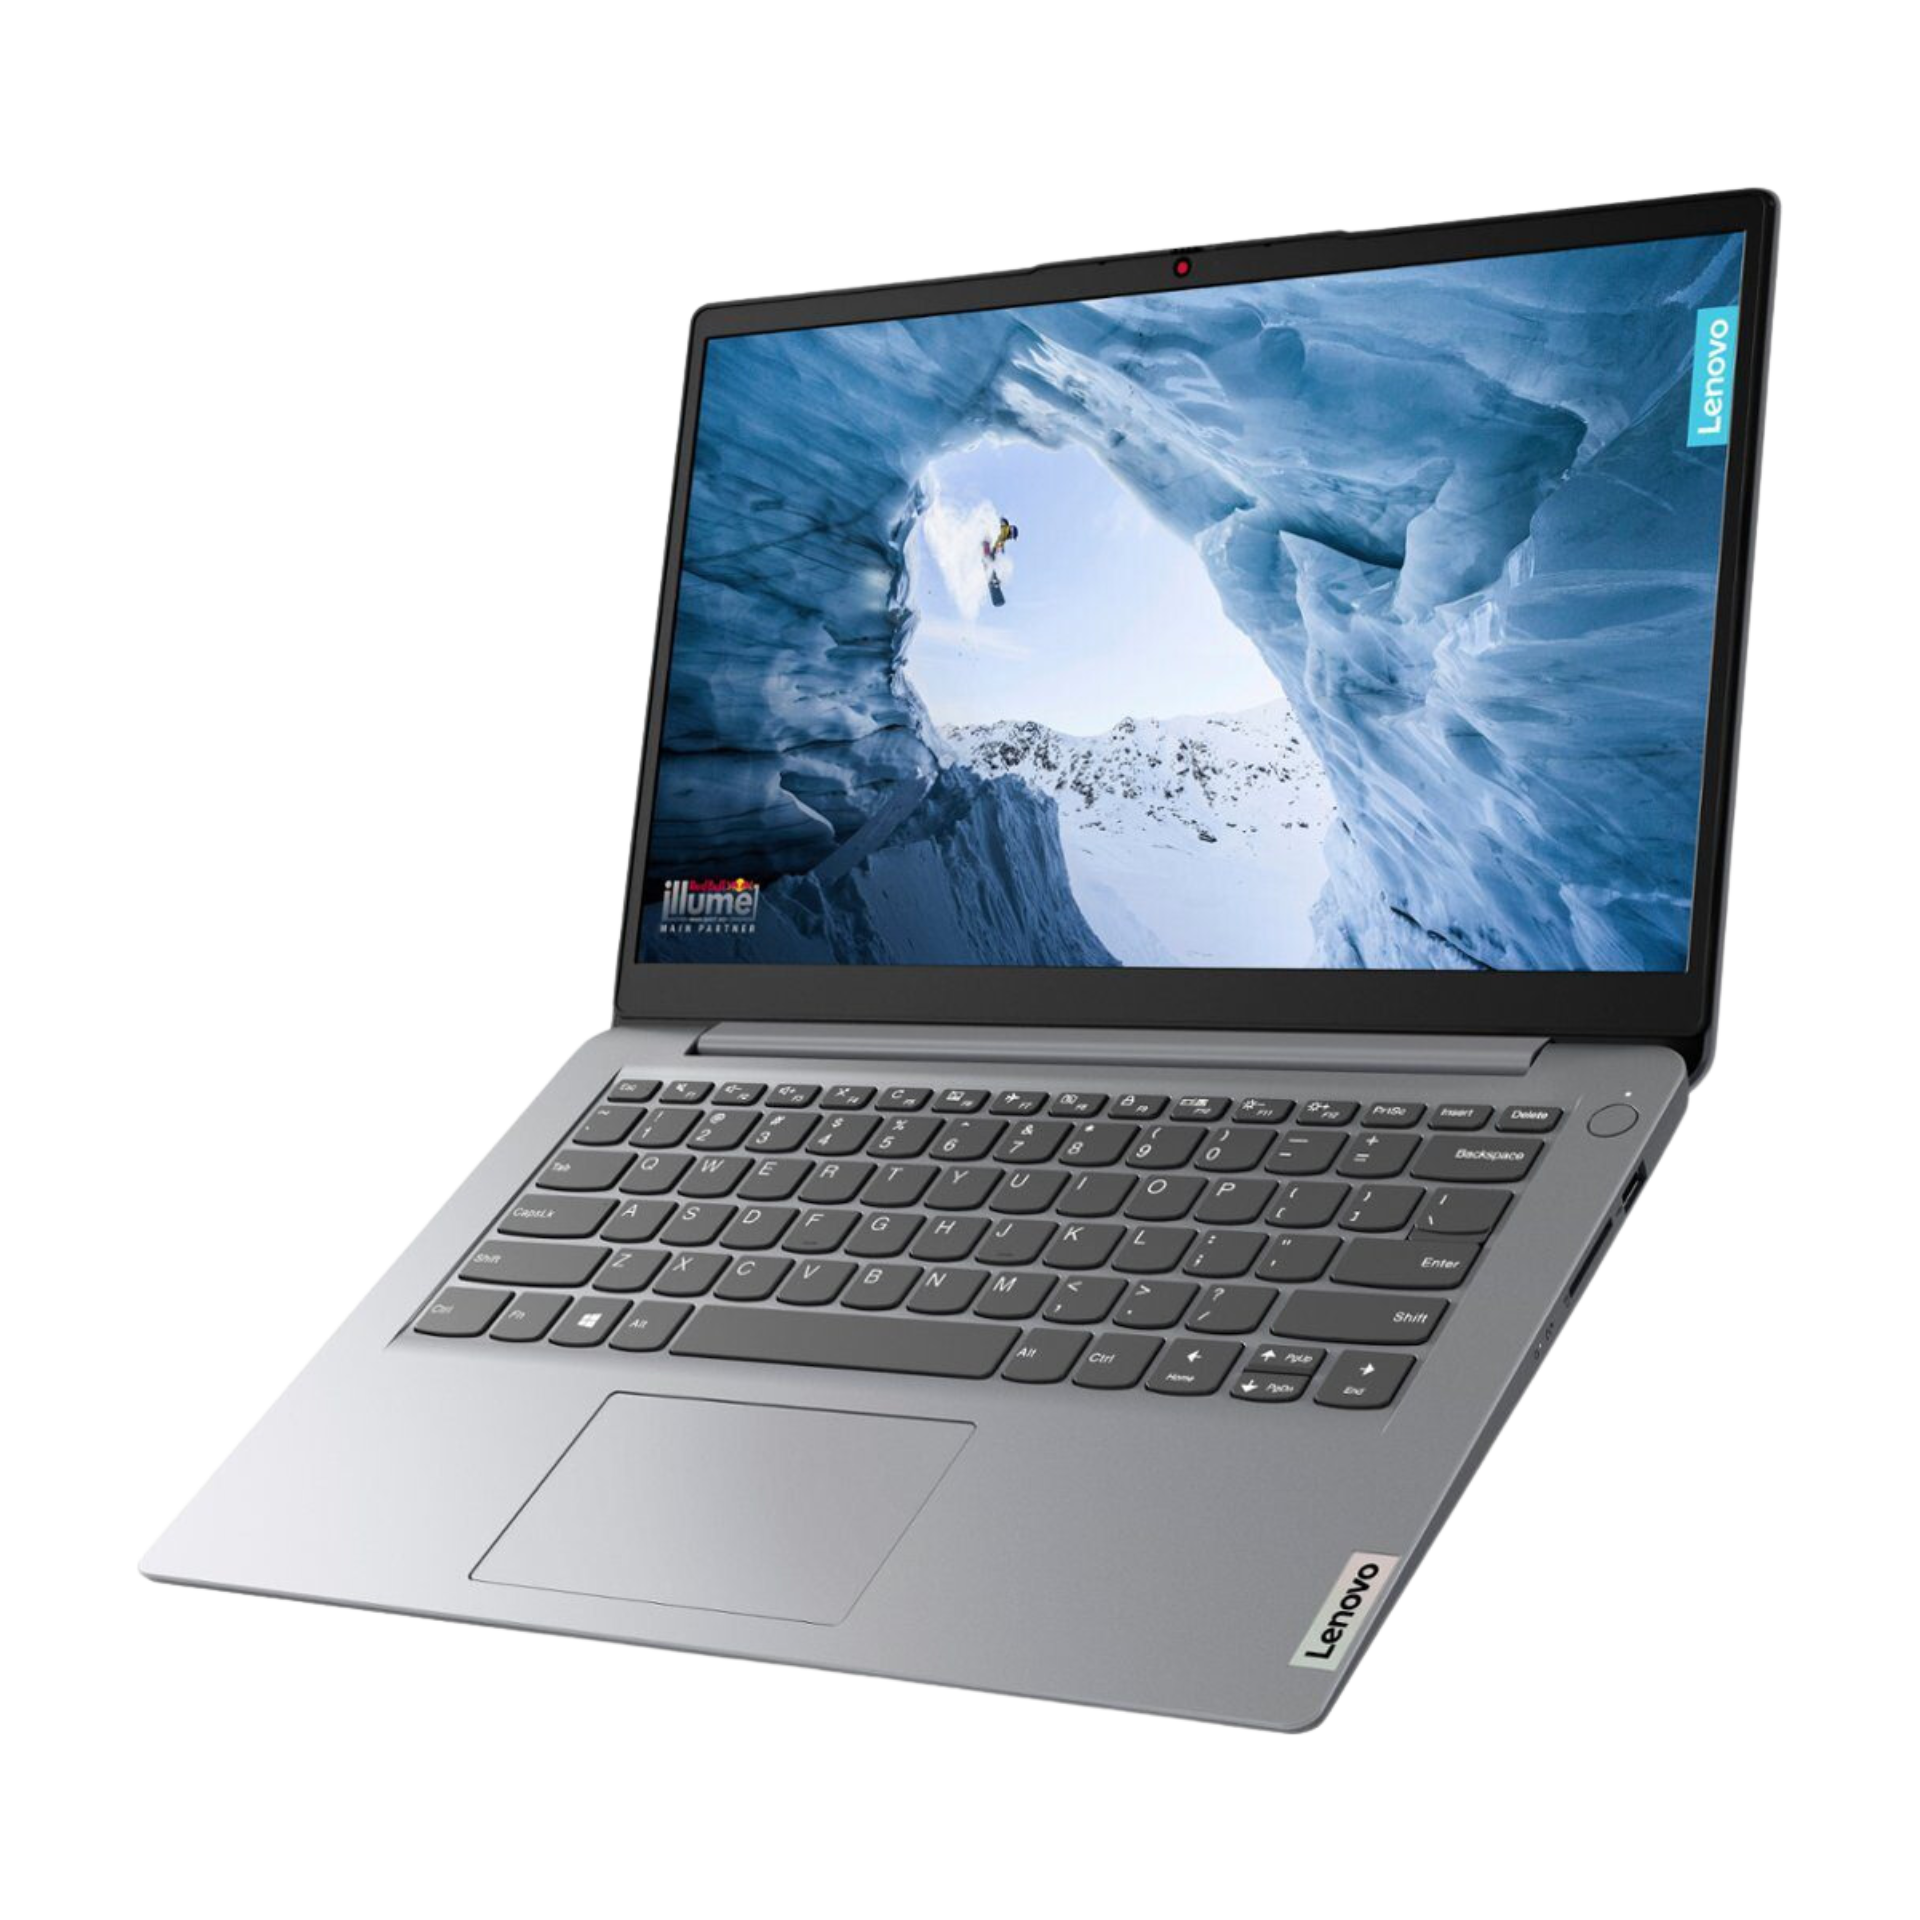 Laptop Lenovo Idepad 14" Celeron N4020, 4GB, 128GB (82V60065US) + Licencia Office365 Suscripción 1 año